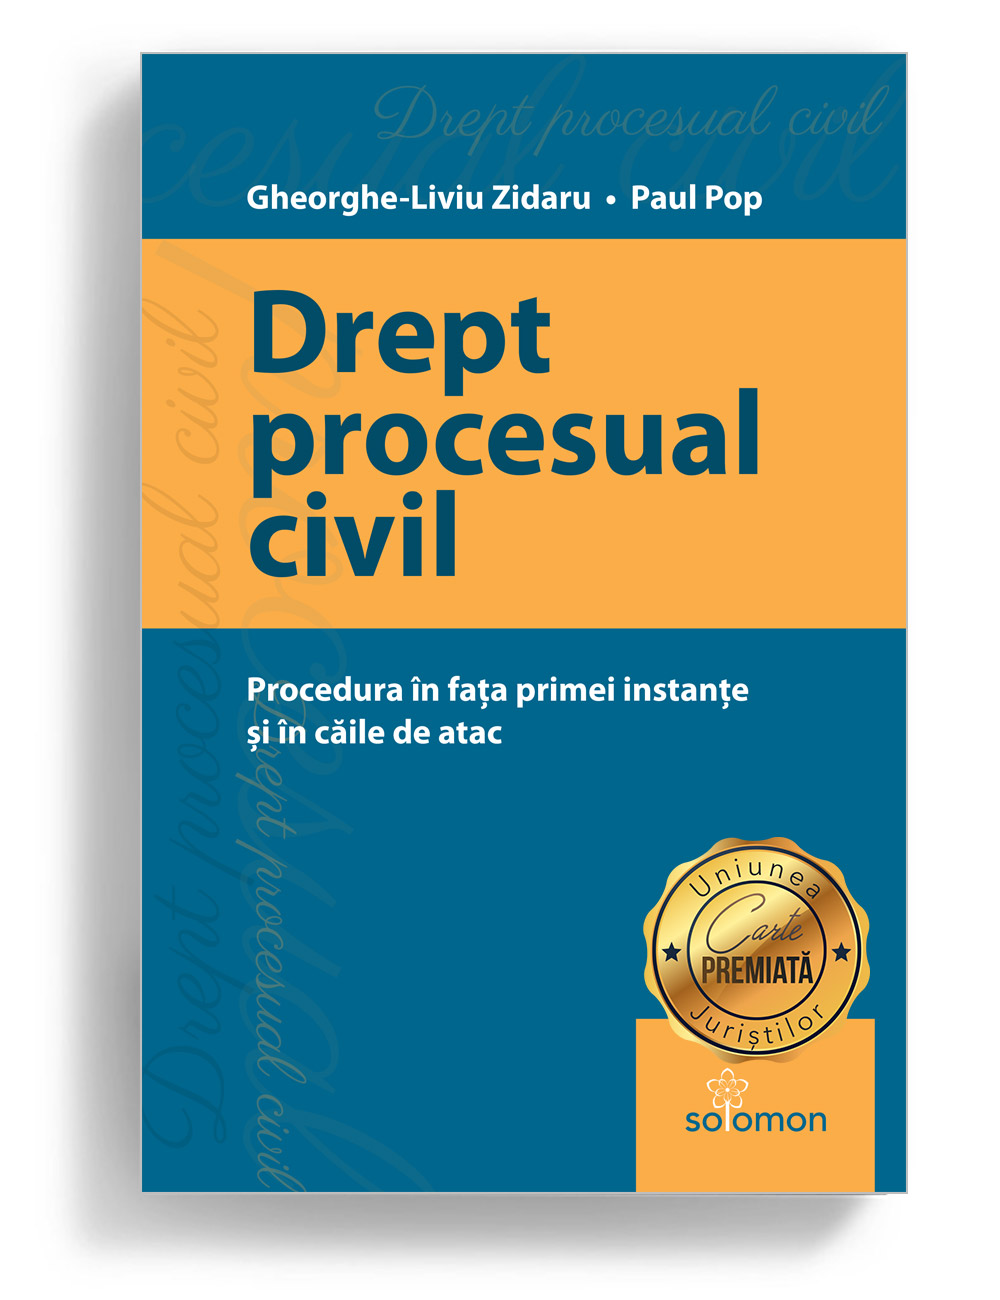 Drept procesual civil, Gheorghe-Liviu Zidaru, Paul Pop